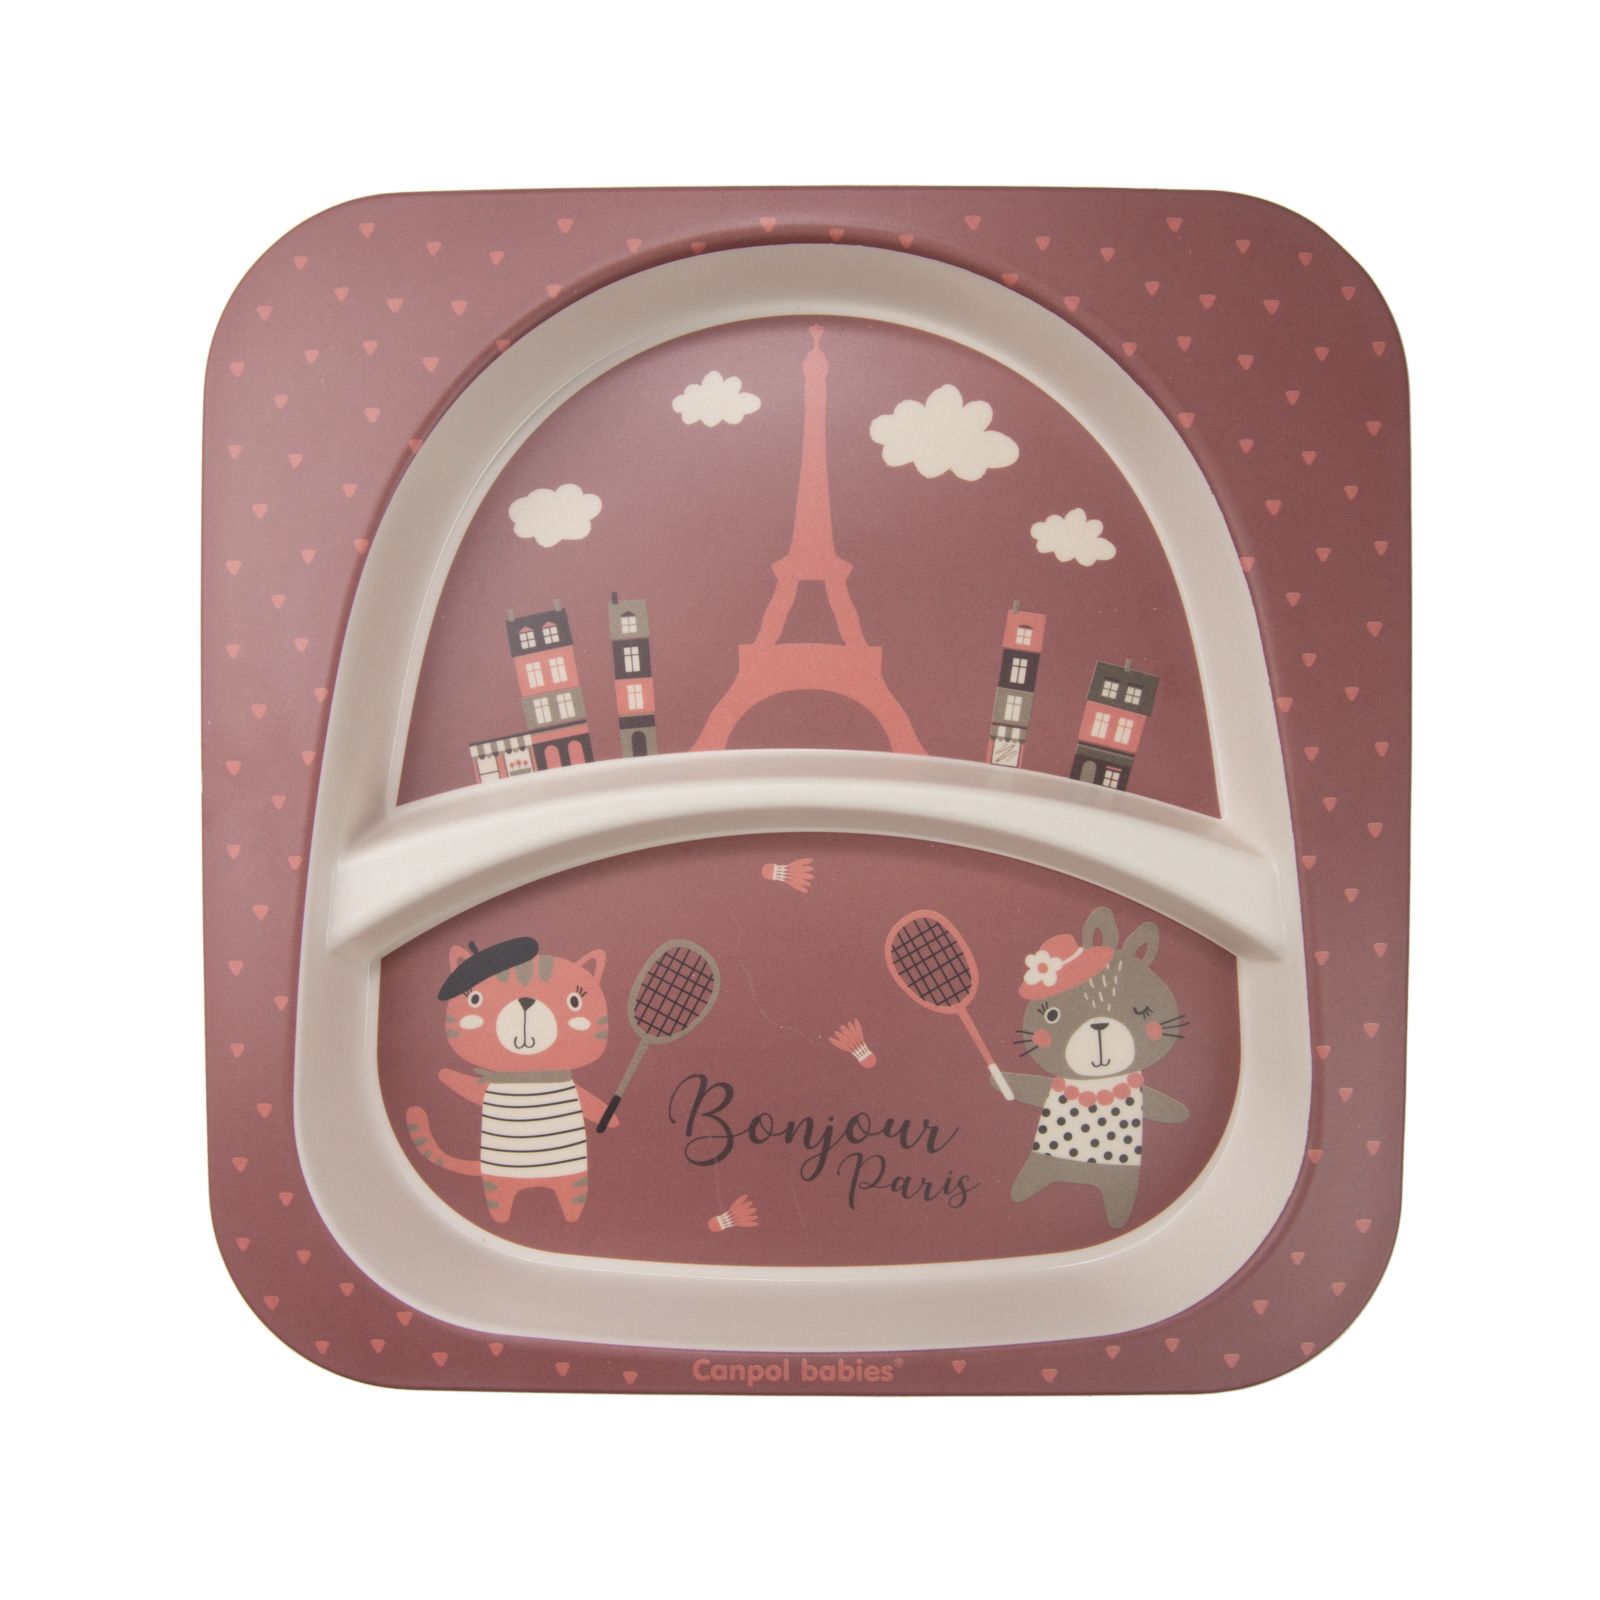 Набор детской посуды Canpol babies BONJOUR PARIS посуды 5 эл. красный (9/227_red) изображение 3